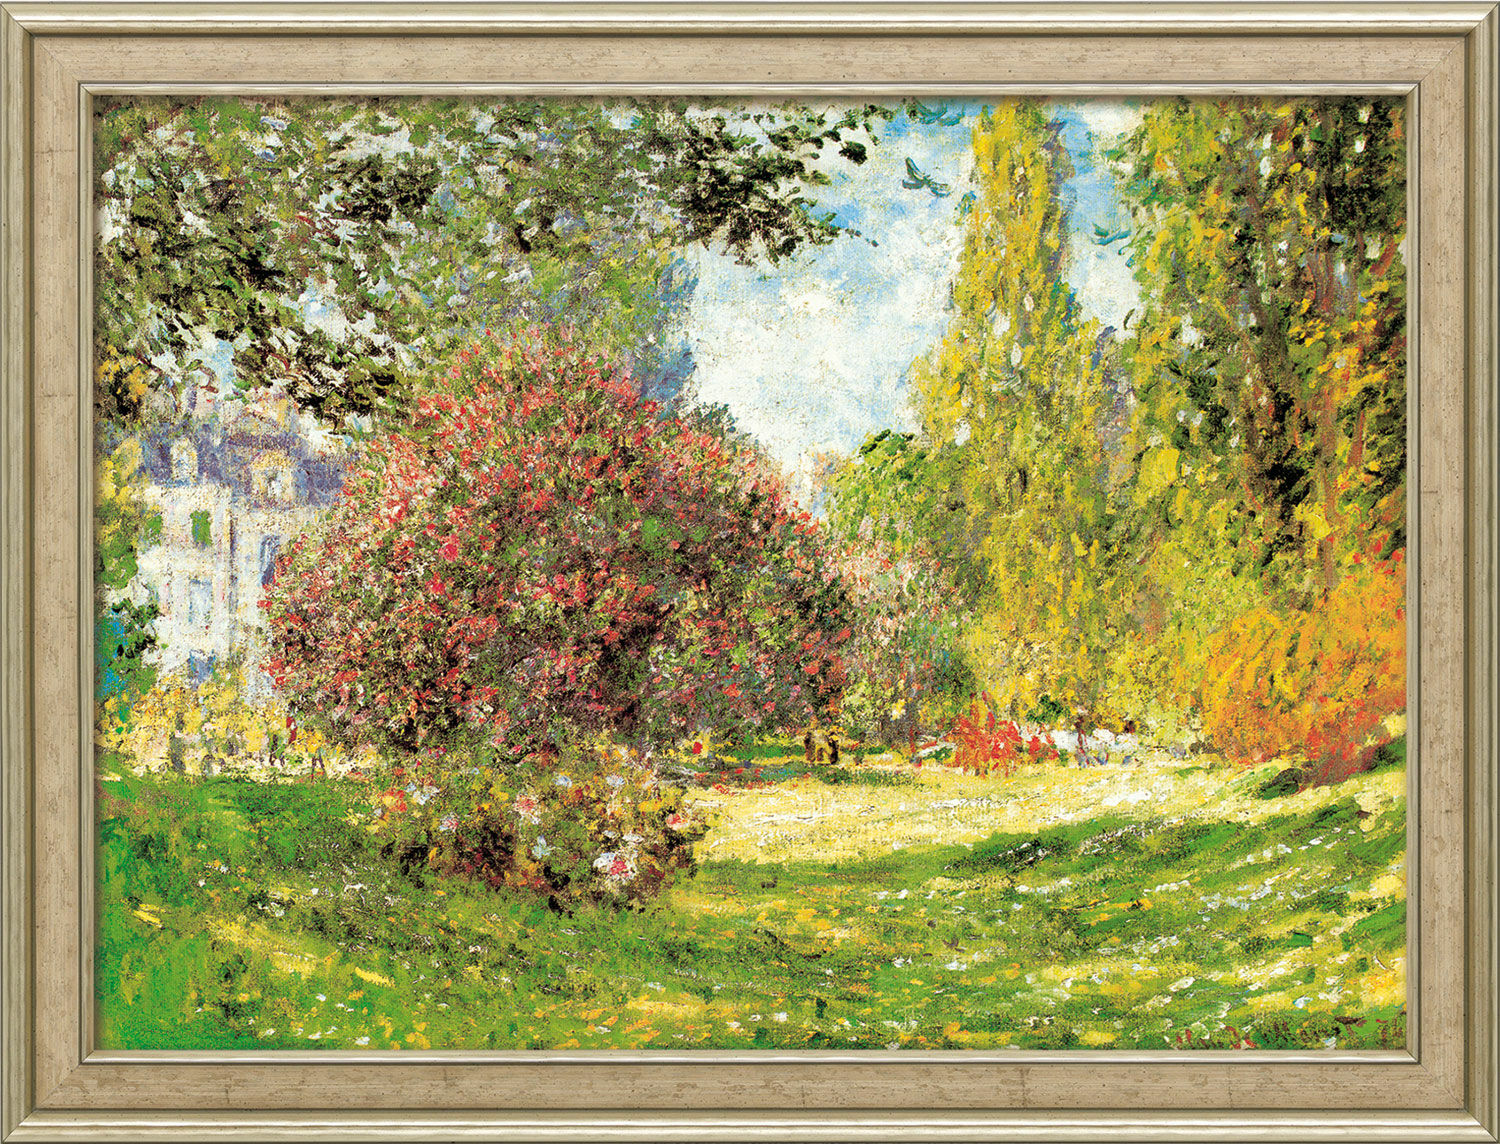 Billede "The Parc Monceau" (1876), indrammet von Claude Monet